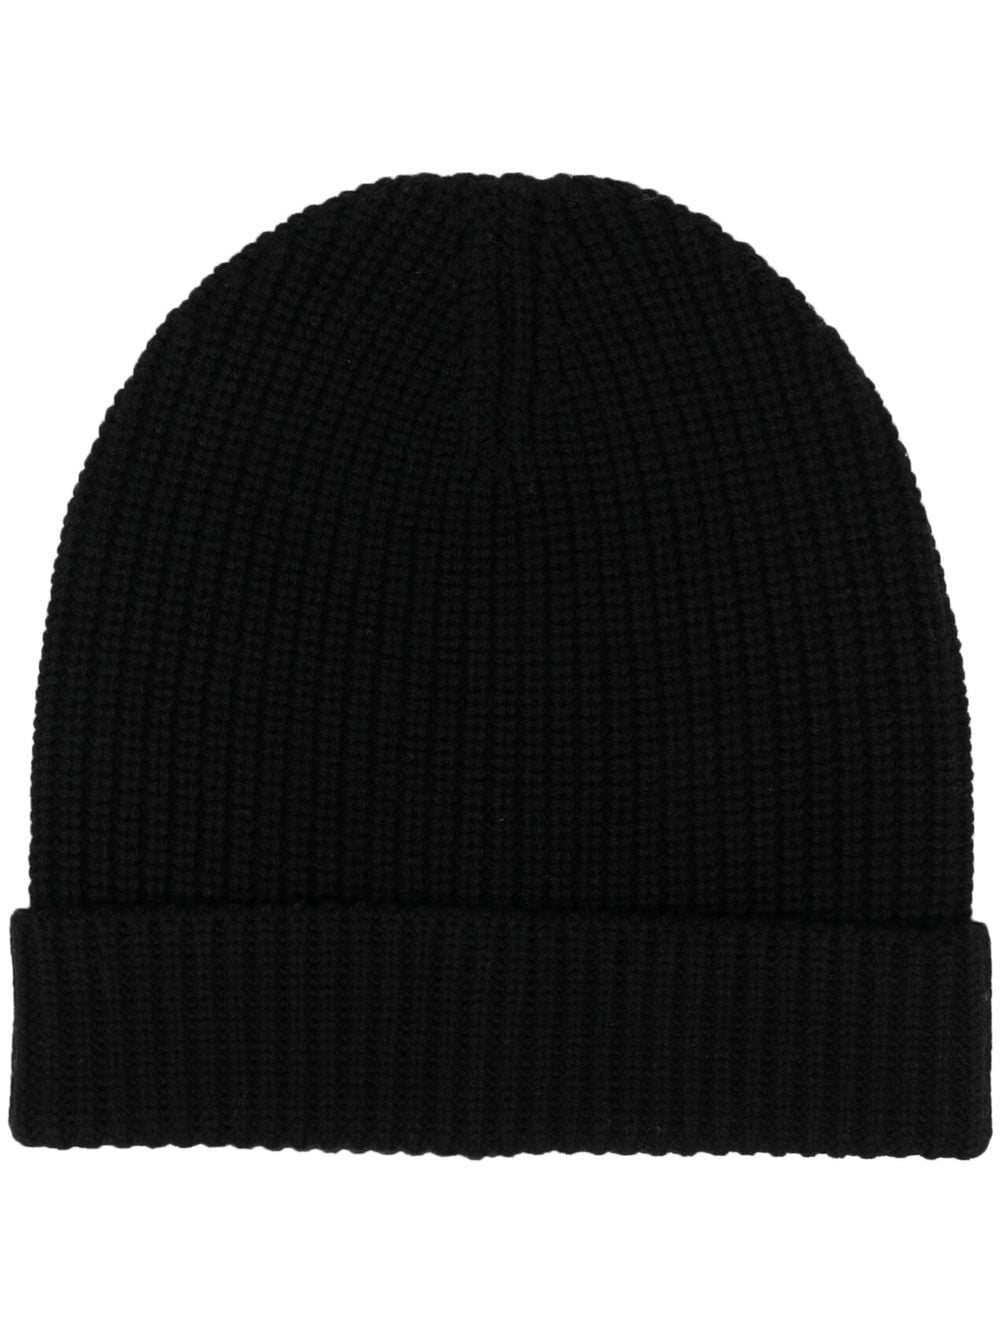 Filippa K knitted beanie hat - Black von Filippa K